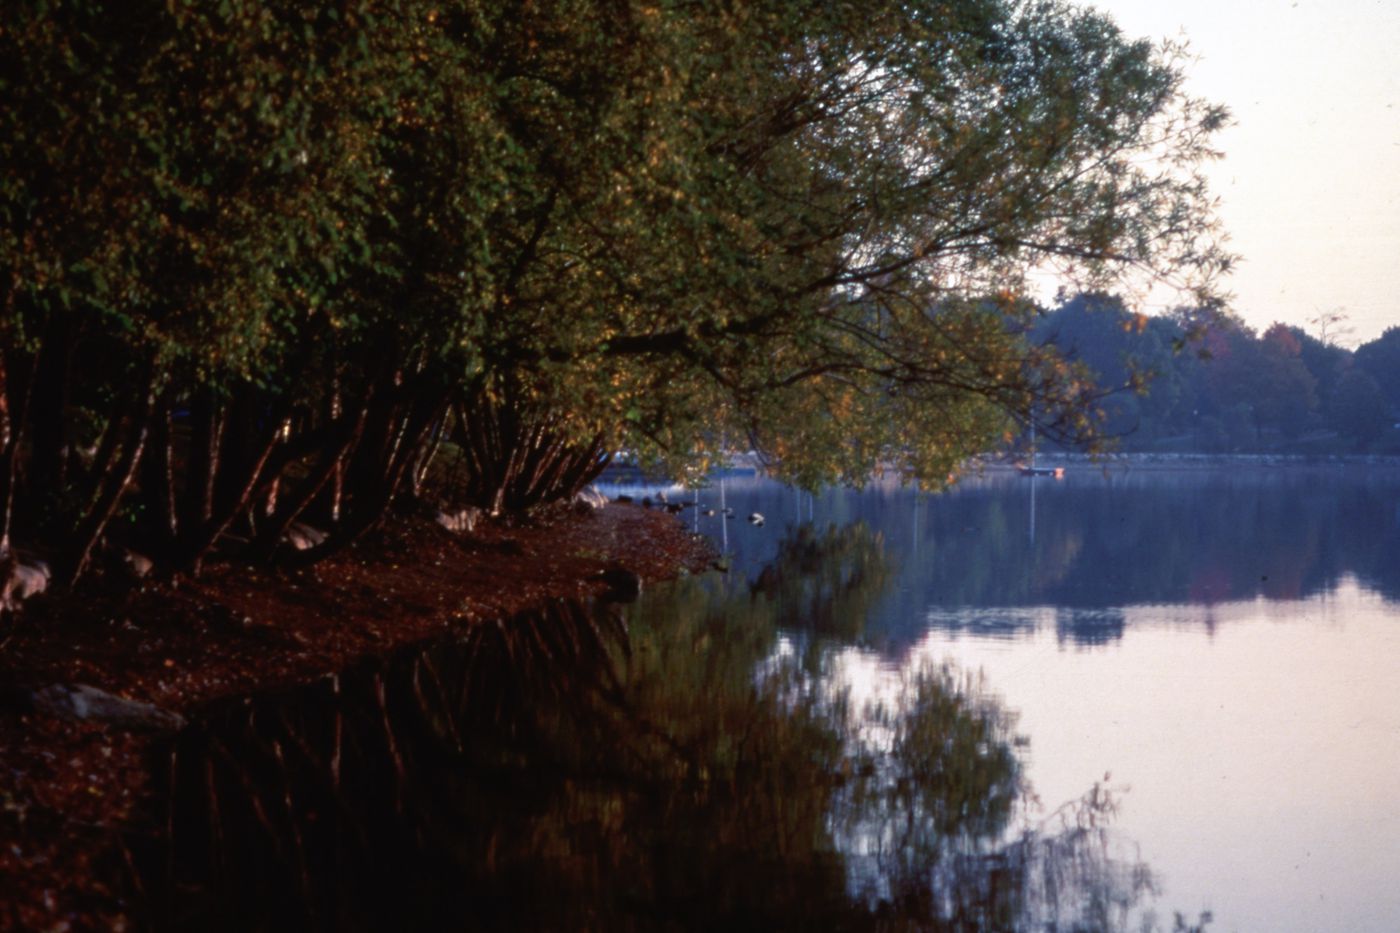 Photograph of river landscape for research for Olmsted: L'origine del parco urbano e del parco naturale contemporaneo